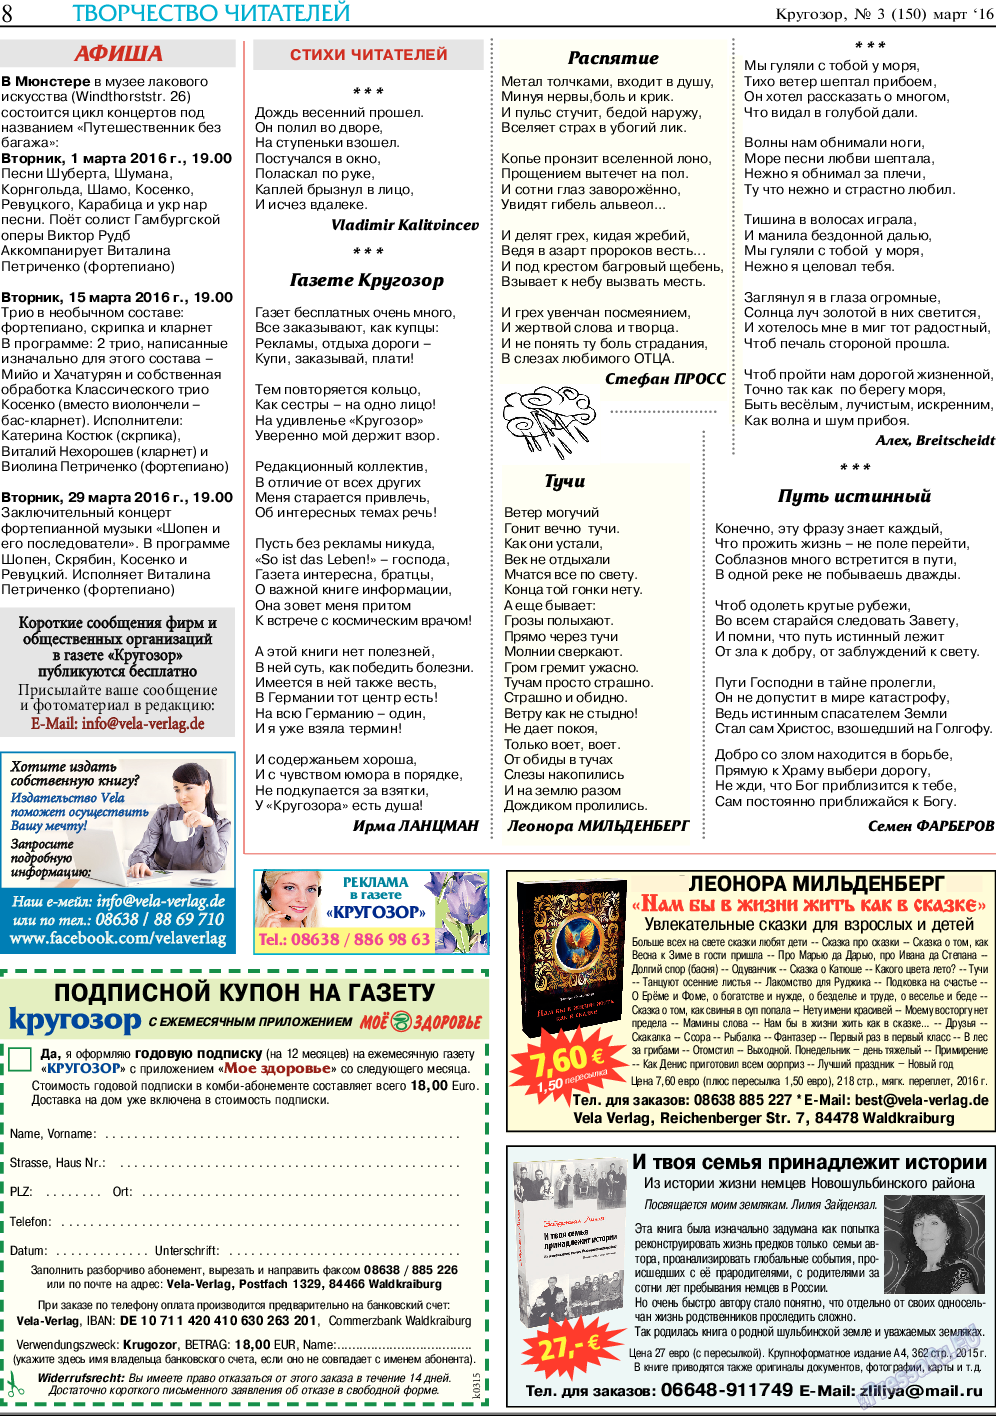 Кругозор, газета. 2016 №3 стр.8